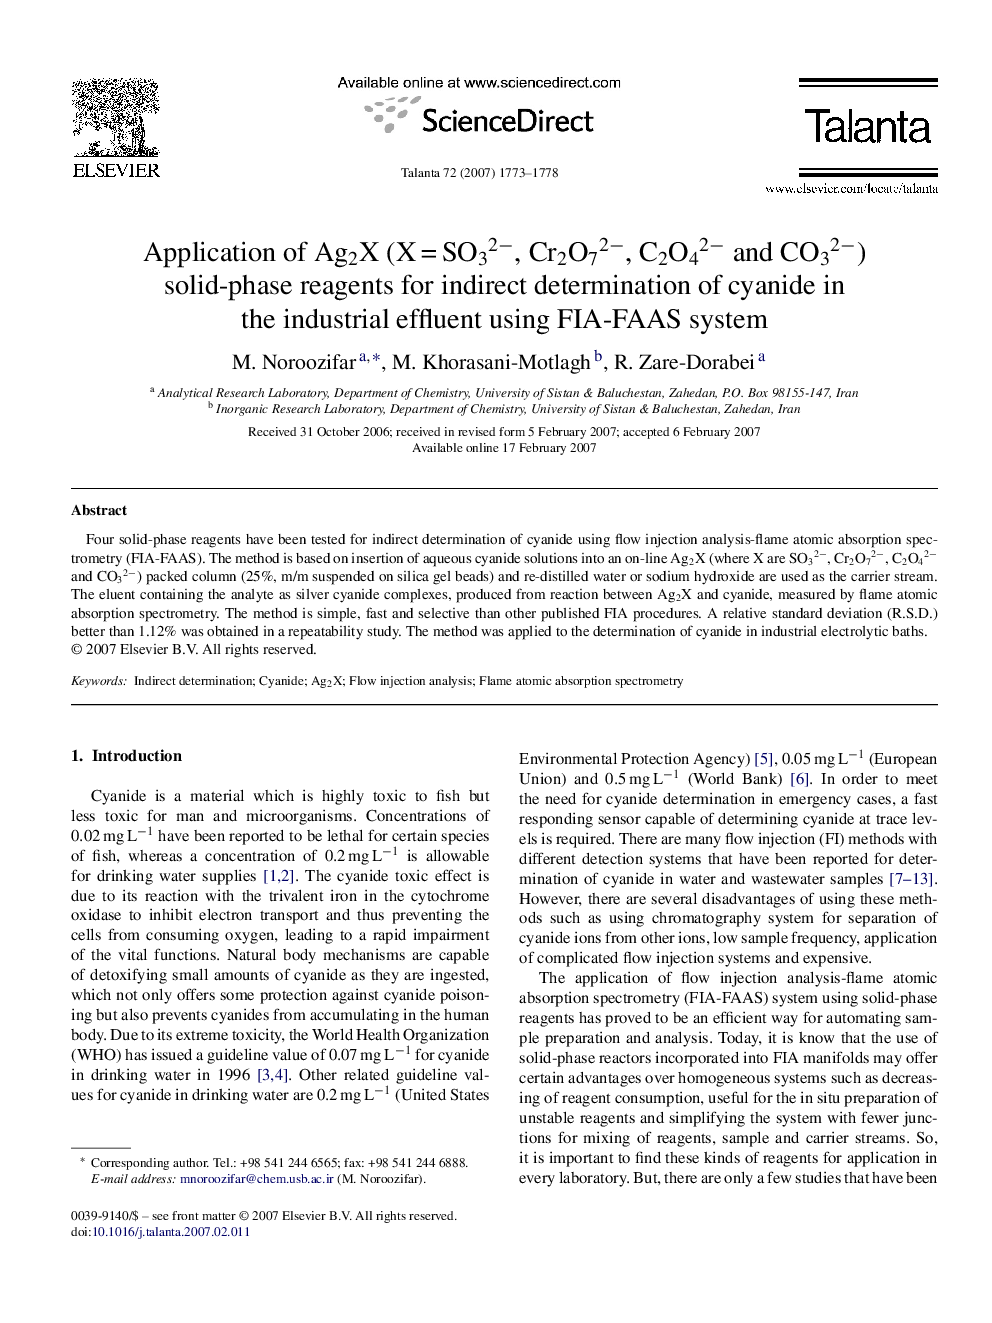 Application of Ag2X (XÂ =Â SO32â, Cr2O72â, C2O42â and CO32â) solid-phase reagents for indirect determination of cyanide in the industrial effluent using FIA-FAAS system